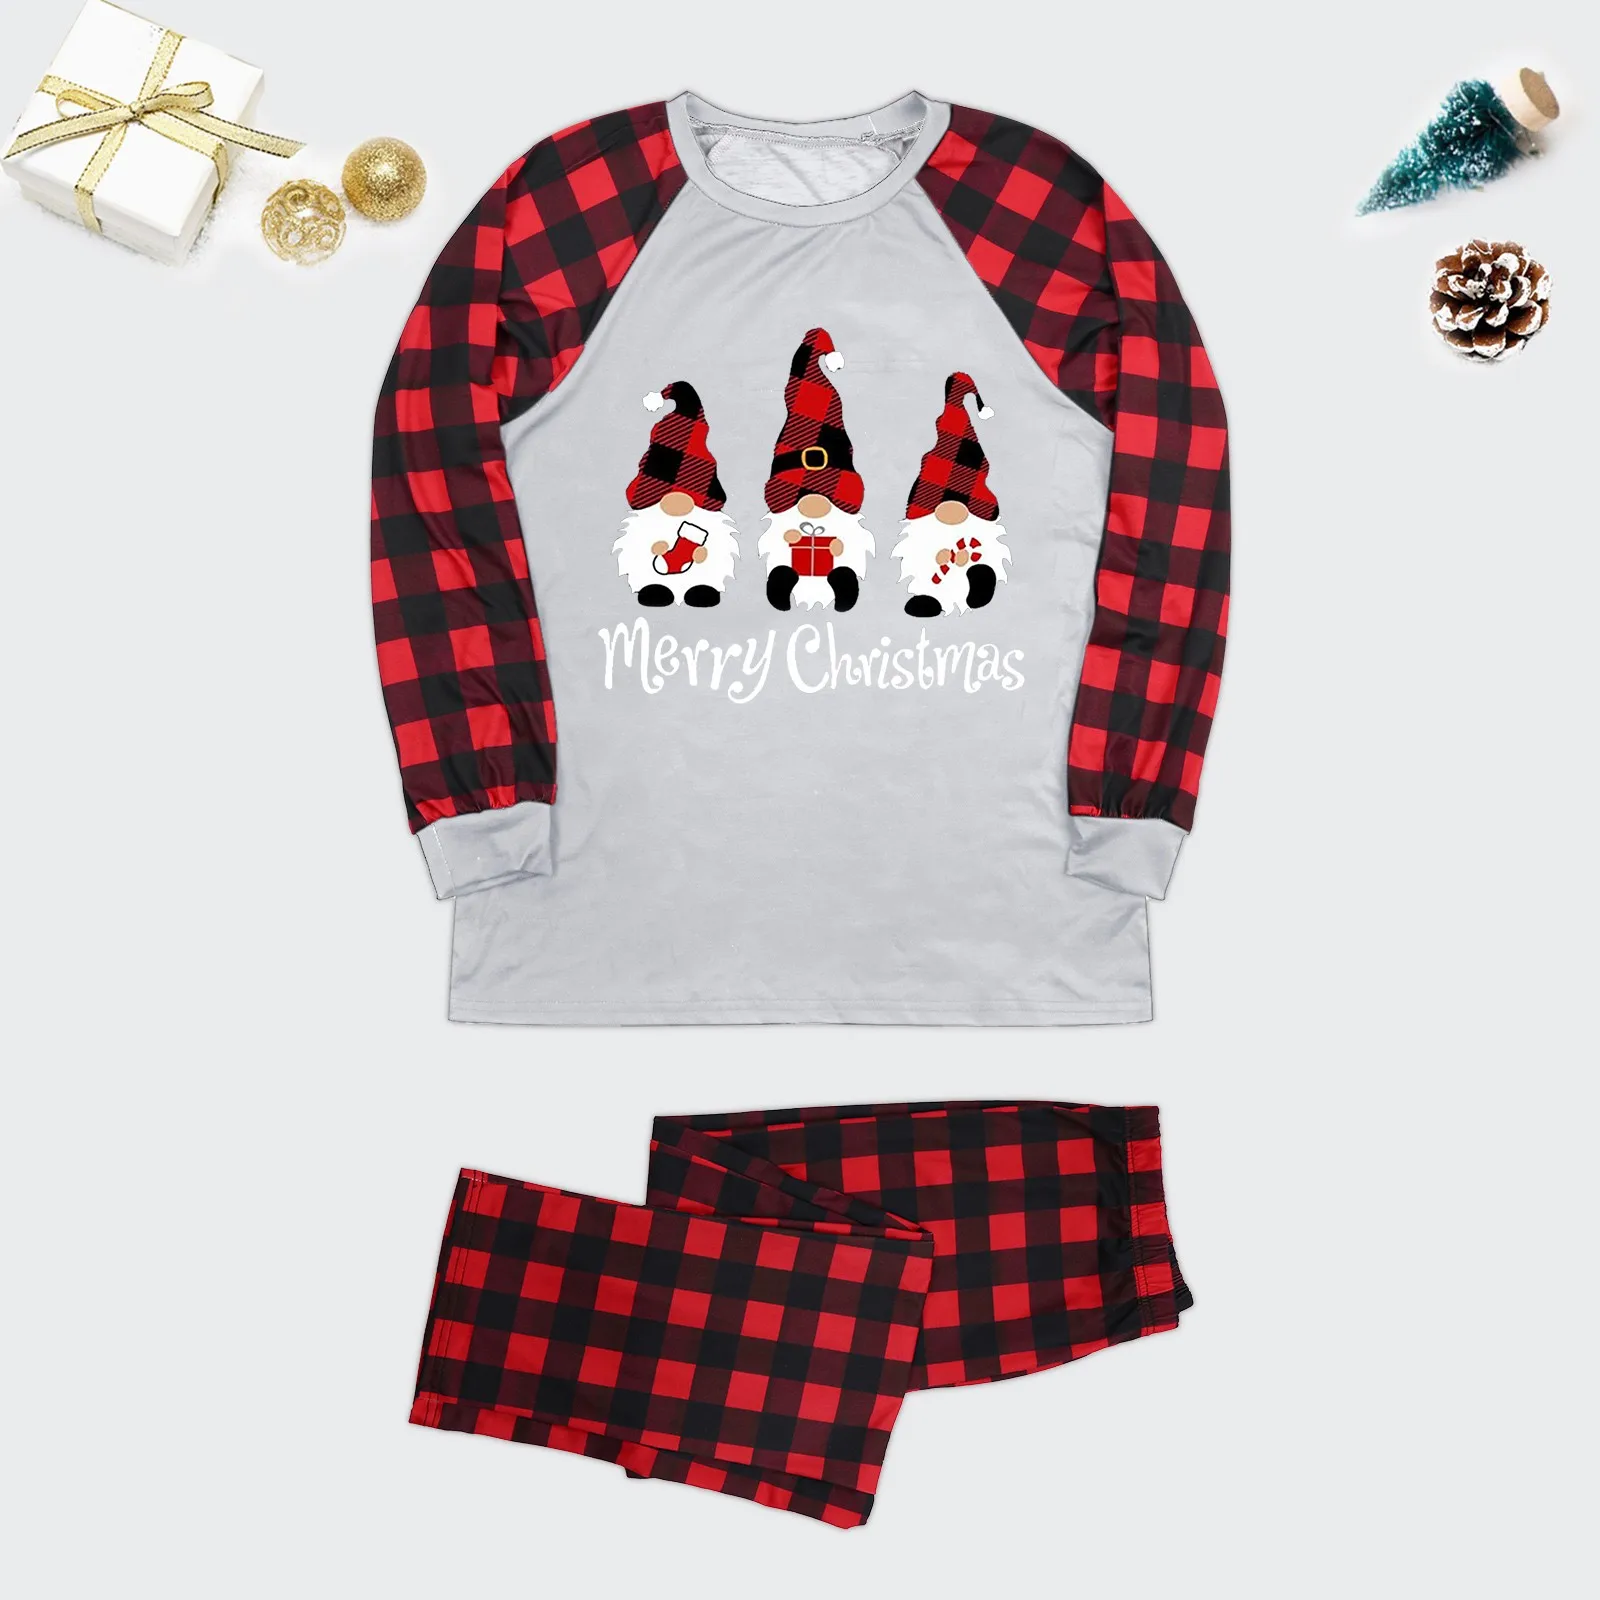 

Семейные парные рождественские пижамы, набор с клетчатыми рукавами, праздничные пижамы с милым рисунком для взрослых и детей, семейные гепардовые пижамы